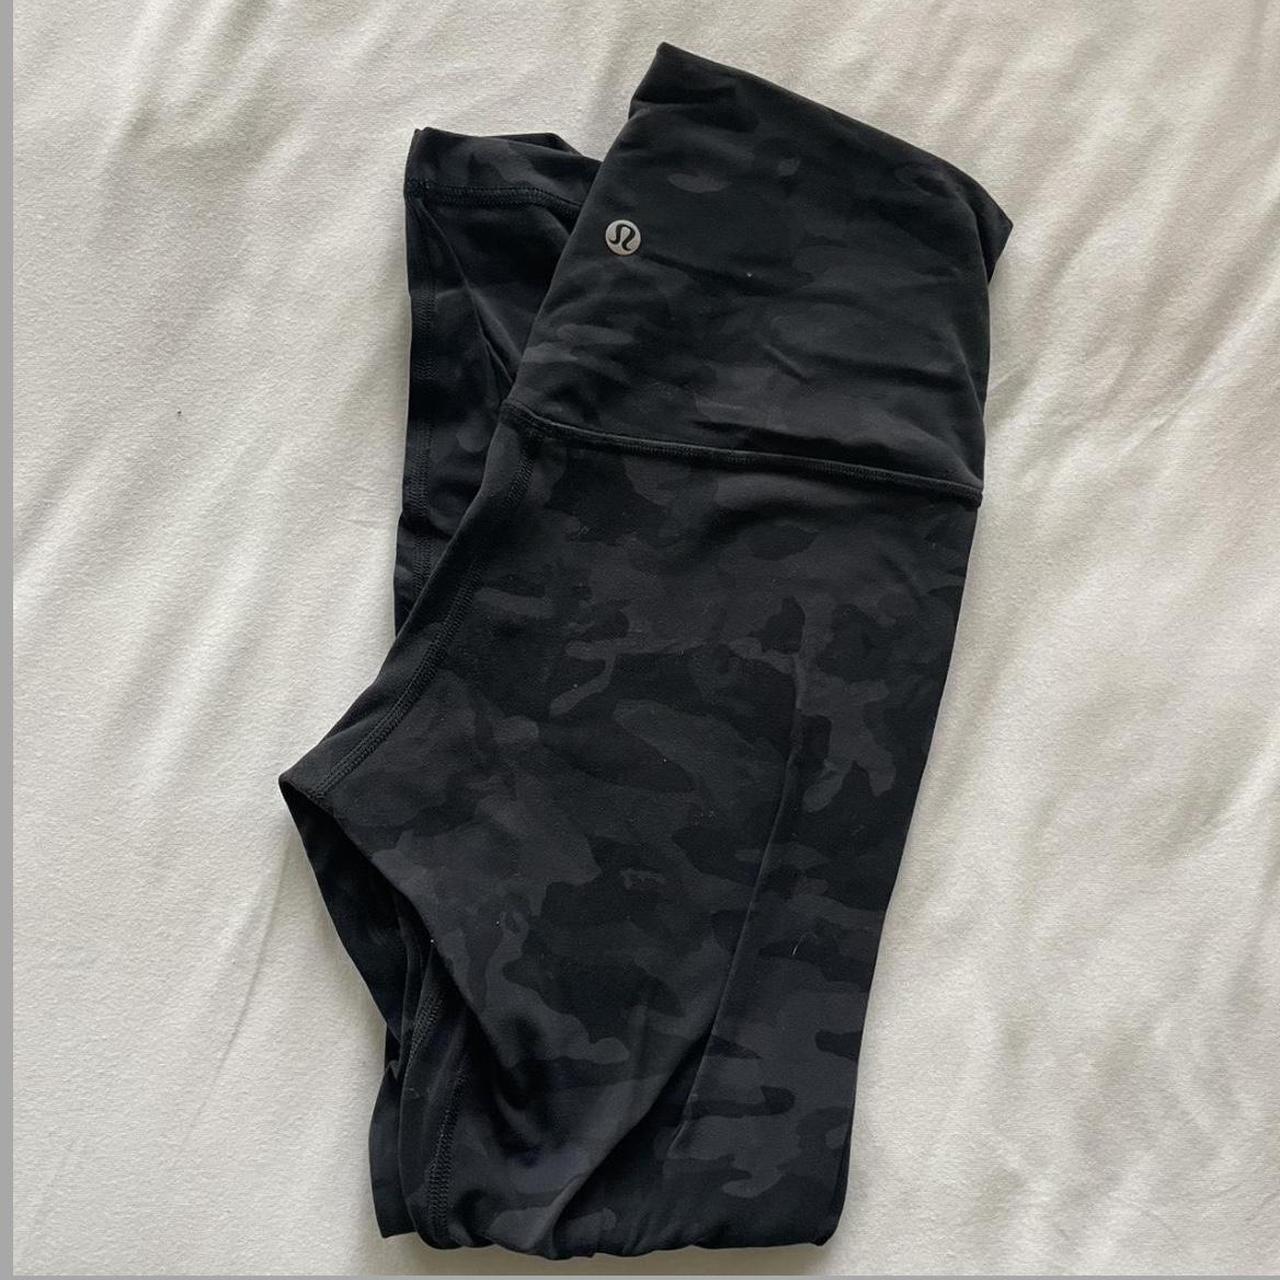 lululemon black camo align leggings - Depop